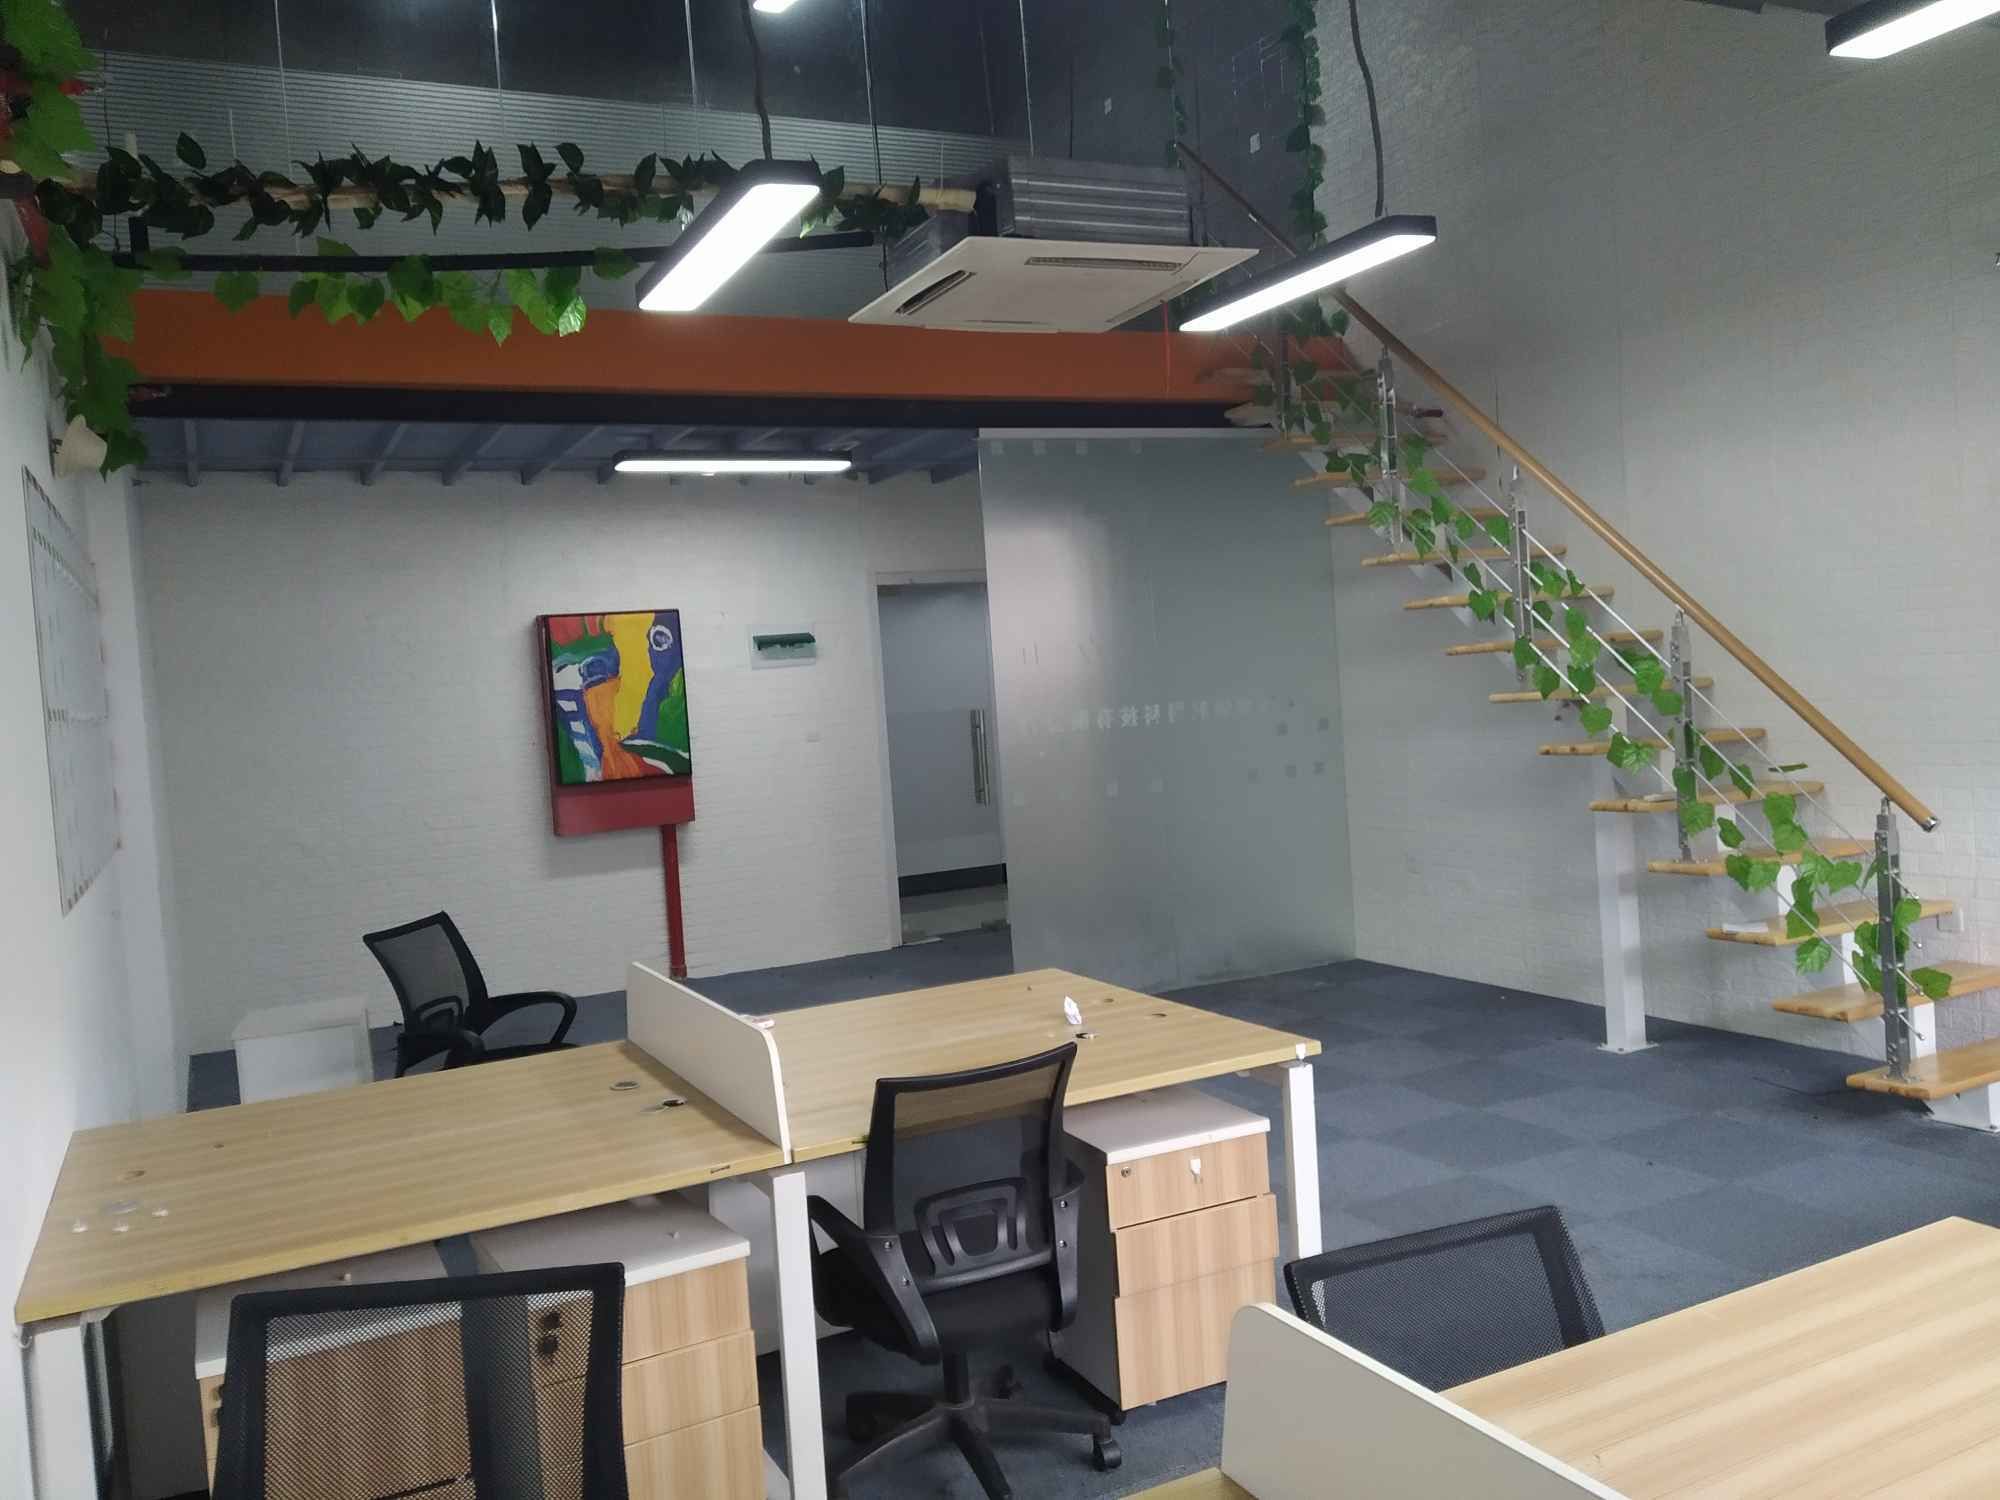 比乐5H创意办公空间104平米办公室出租-租金价格2.84元/m²/天